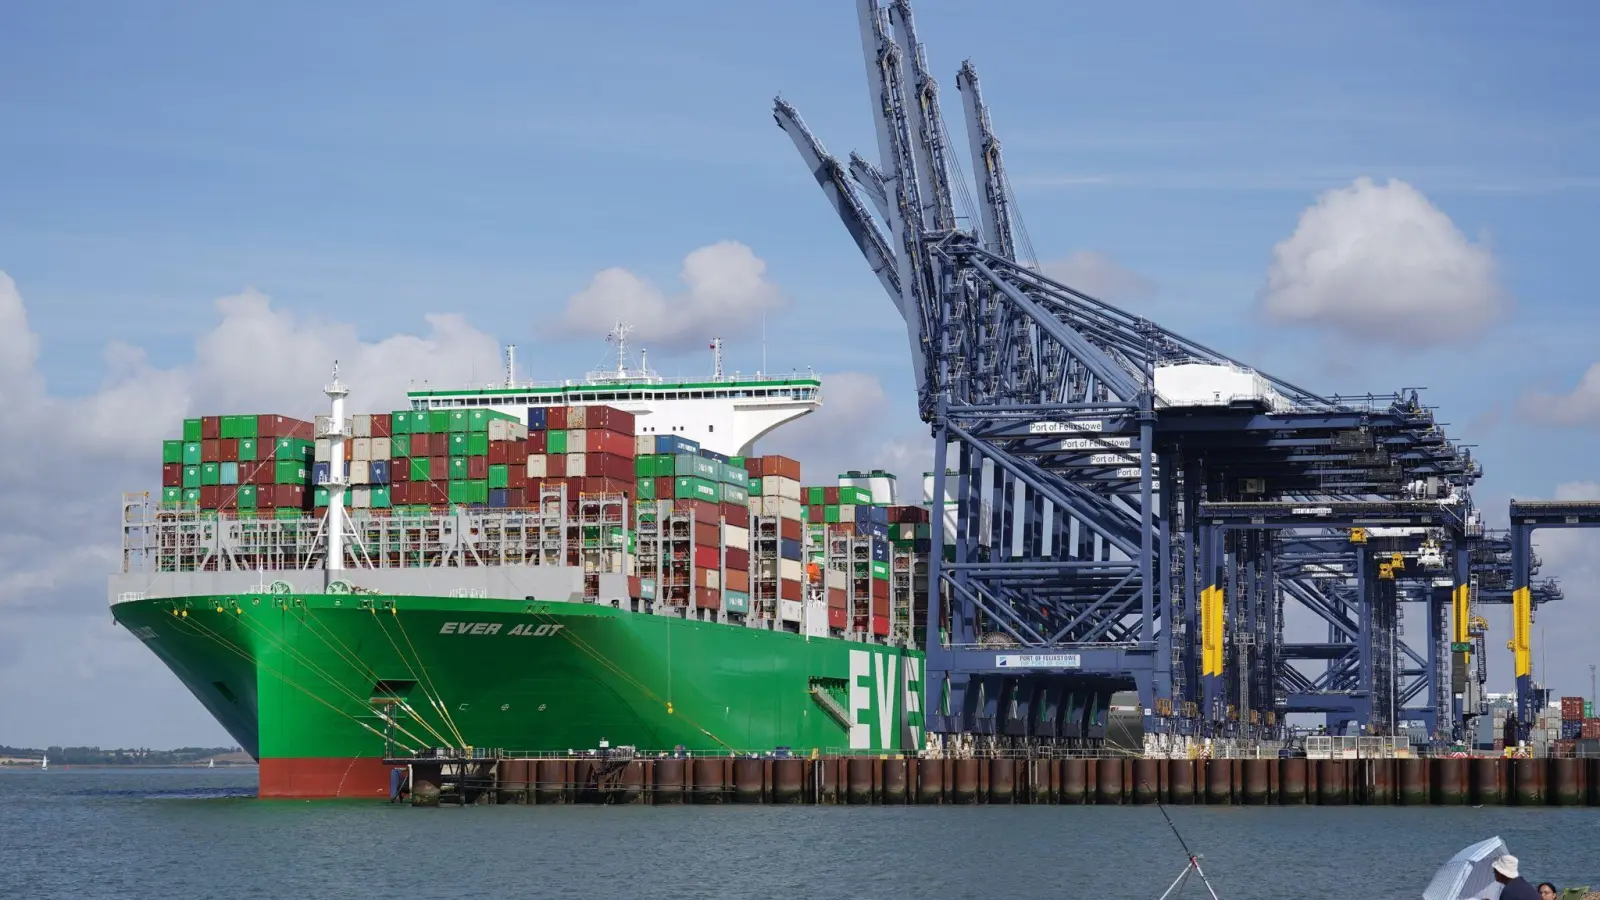 Frachtschiff im Hafen von Felixstowe, dem größten und verkehrsreichsten Containerhafen Großbritanniens. Wegen des Brexits wird Großbritannien einem Zeitungsbericht zufolge seine Exportziele deutlich verfehlen. (Foto: Joe Giddens/PA Wire/dpa)